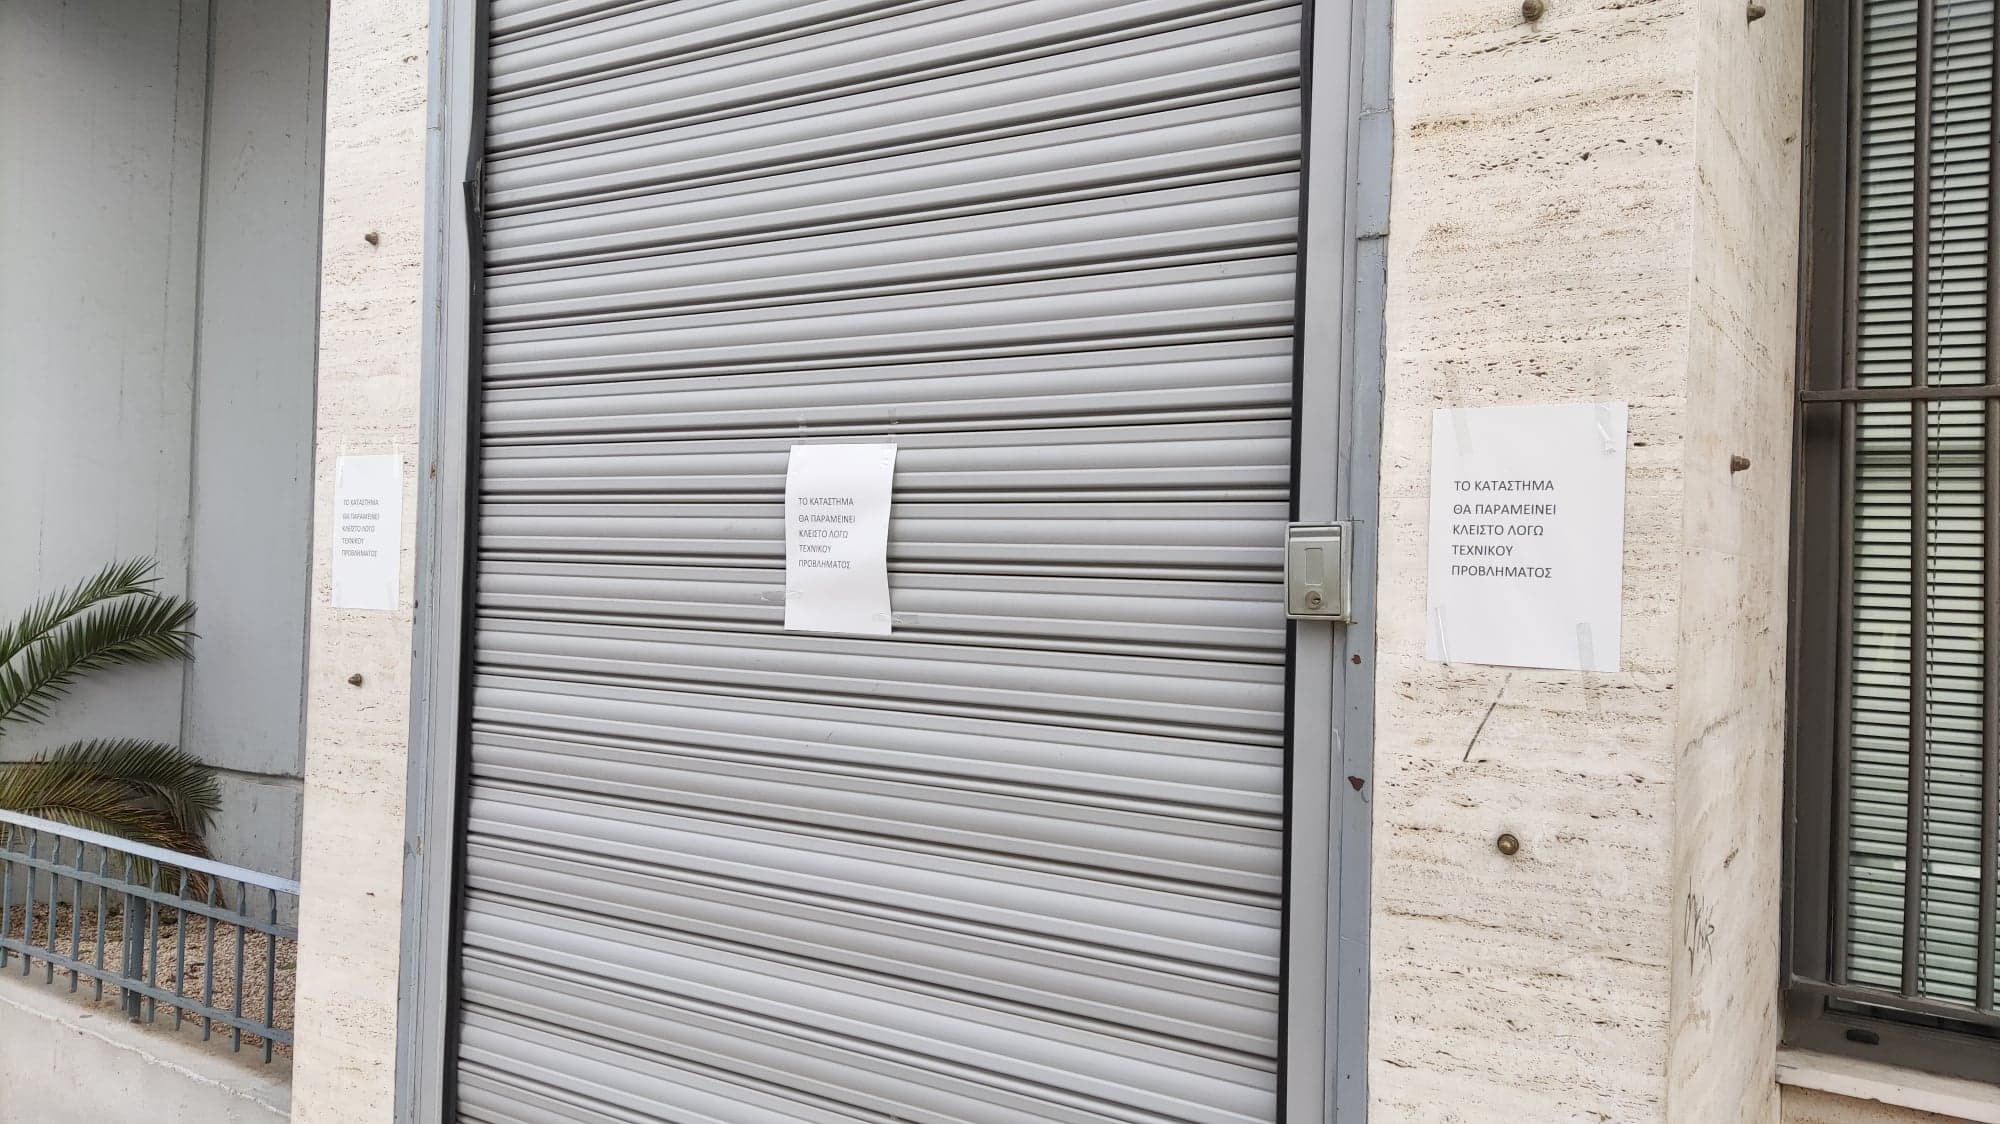 Ναύπλιο: Έκρυψαν κρούσματα στην Τράπεζα Πειραιώς;